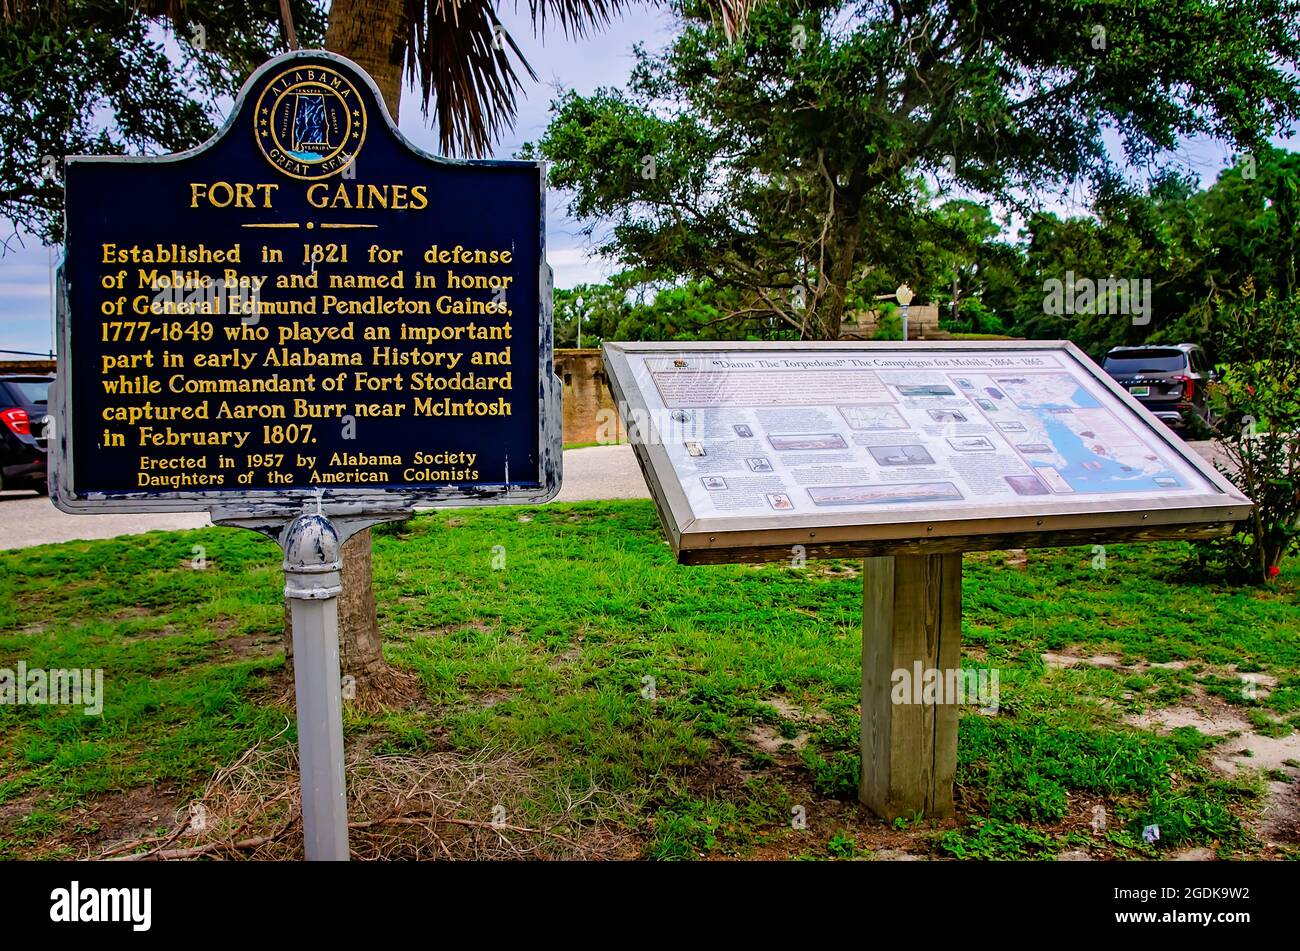 Die historische Markierung von Fort Gaines erzählt die Geschichte des Forts vom 12. August 2021 auf Dauphin Island, Alabama. Stockfoto